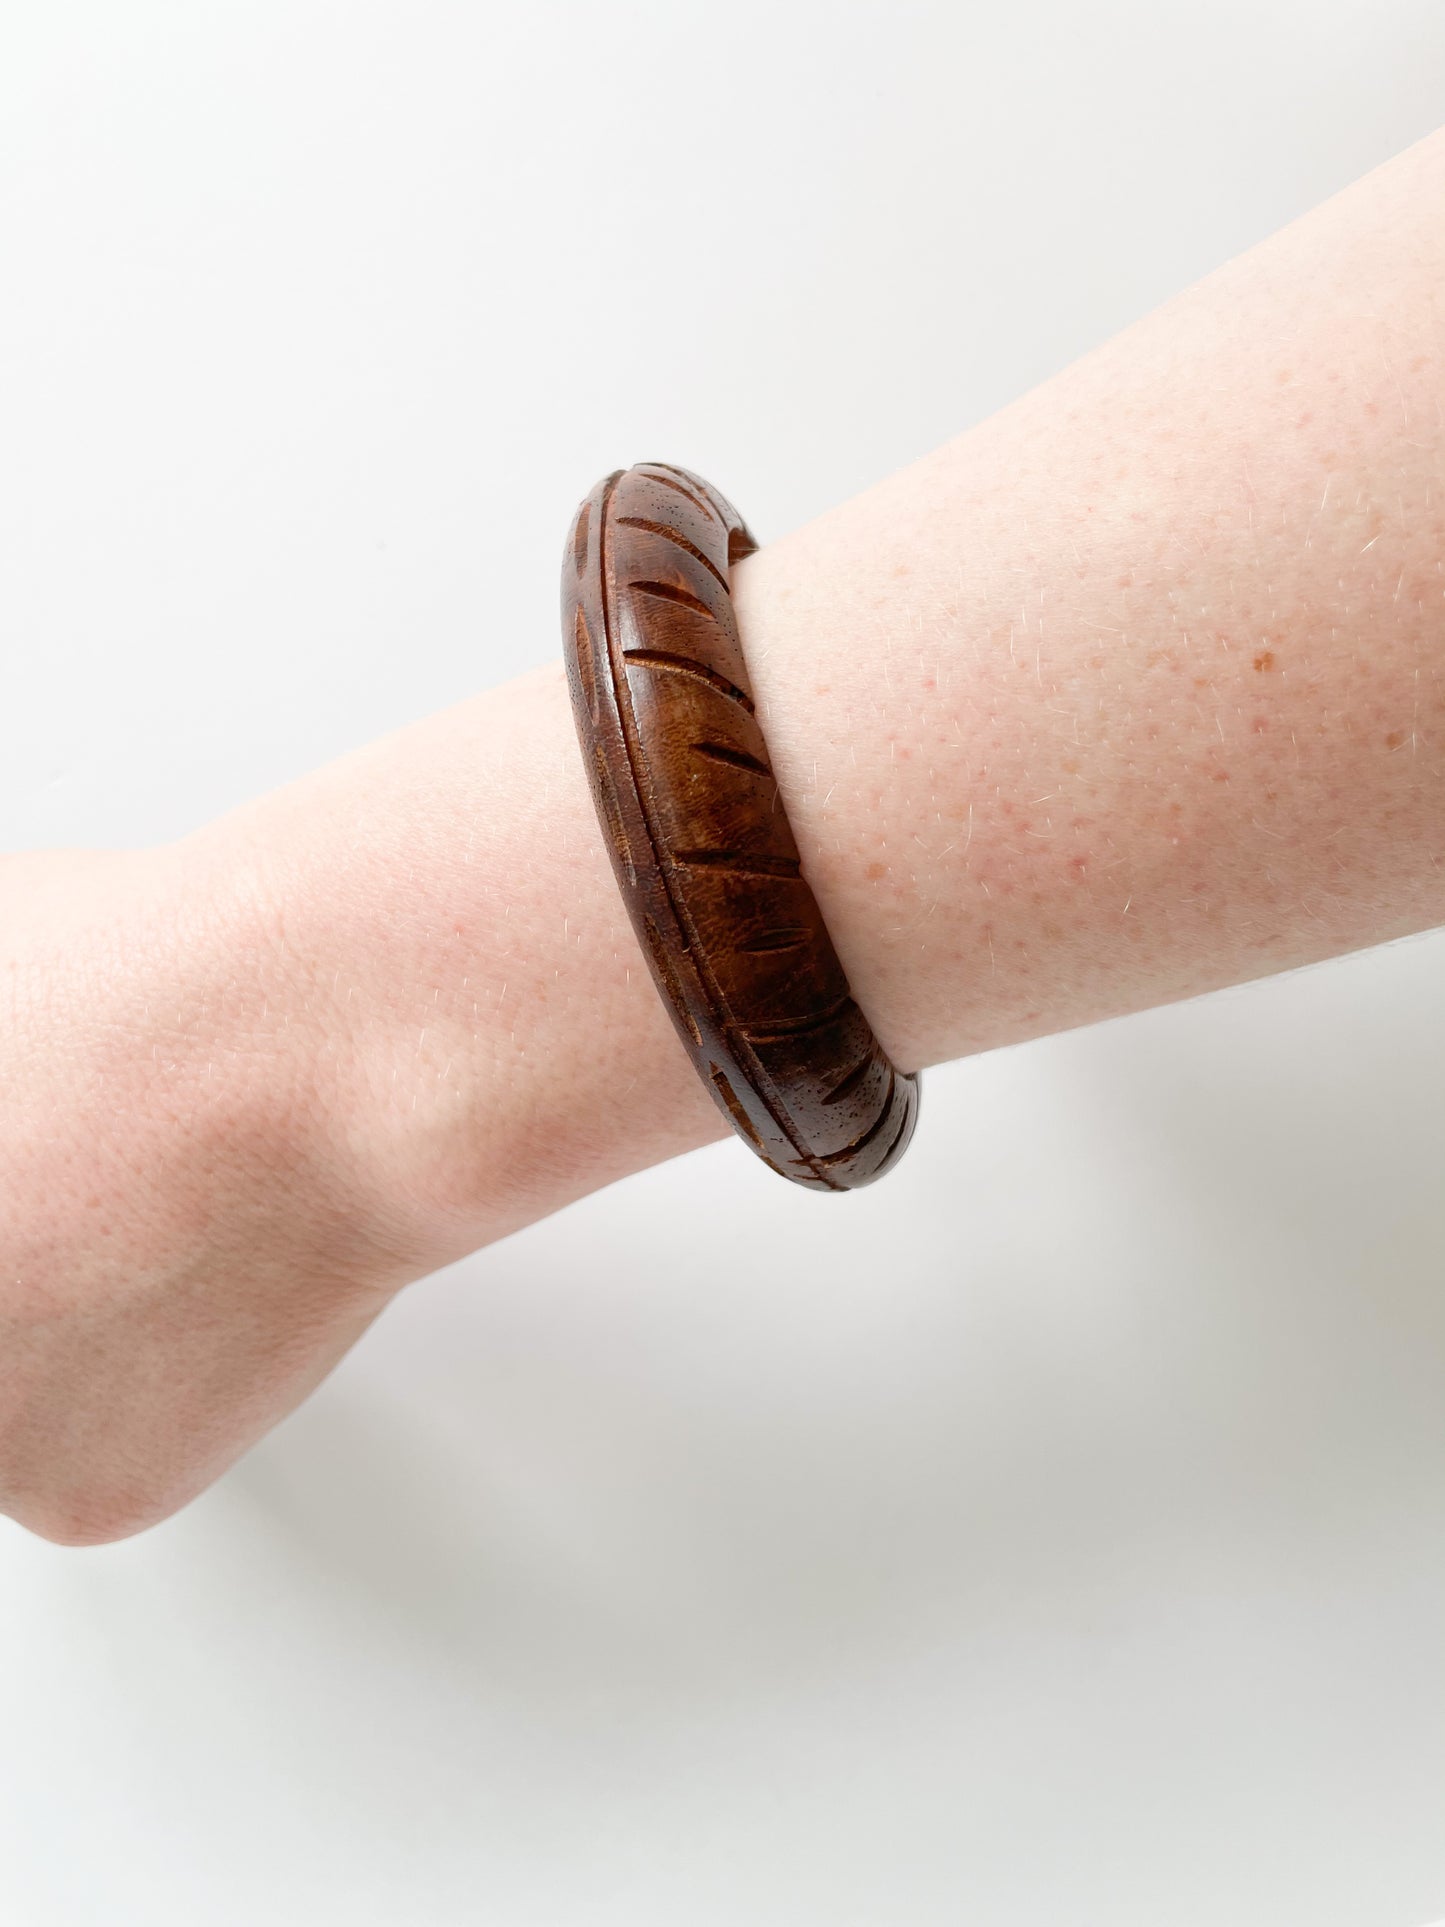 Real Wooden Engraved Bangle Bracelet